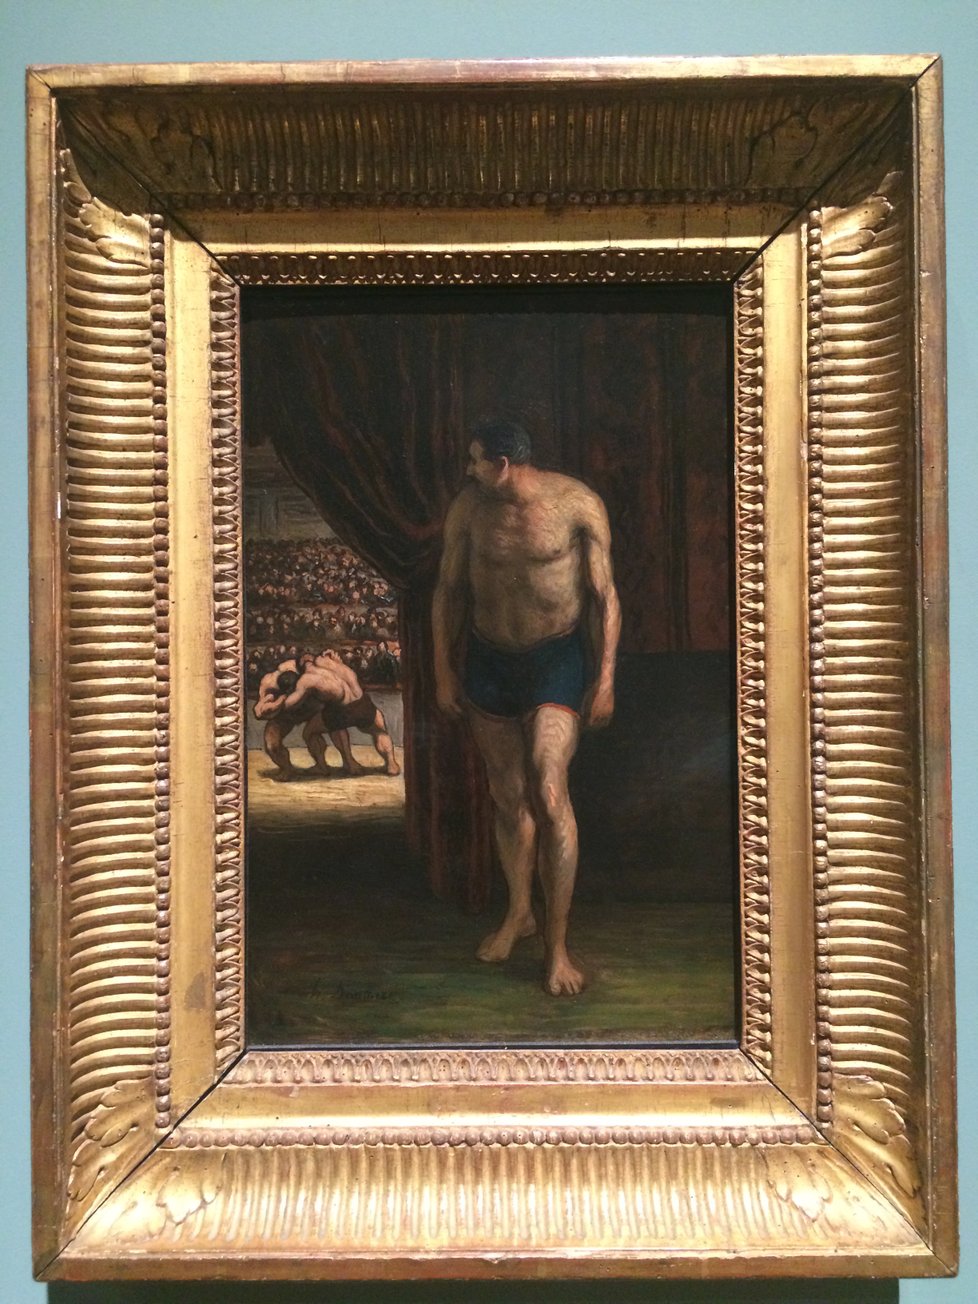 Honoré Daumier je na výstavě zastoupen obrazem Zápasníci. Pro mnohé přitom může být překvapením, že impresionisté nemalovali jen krajiny a výjevy z přírody, ale také portréty nebo výjevy ze společenského života.